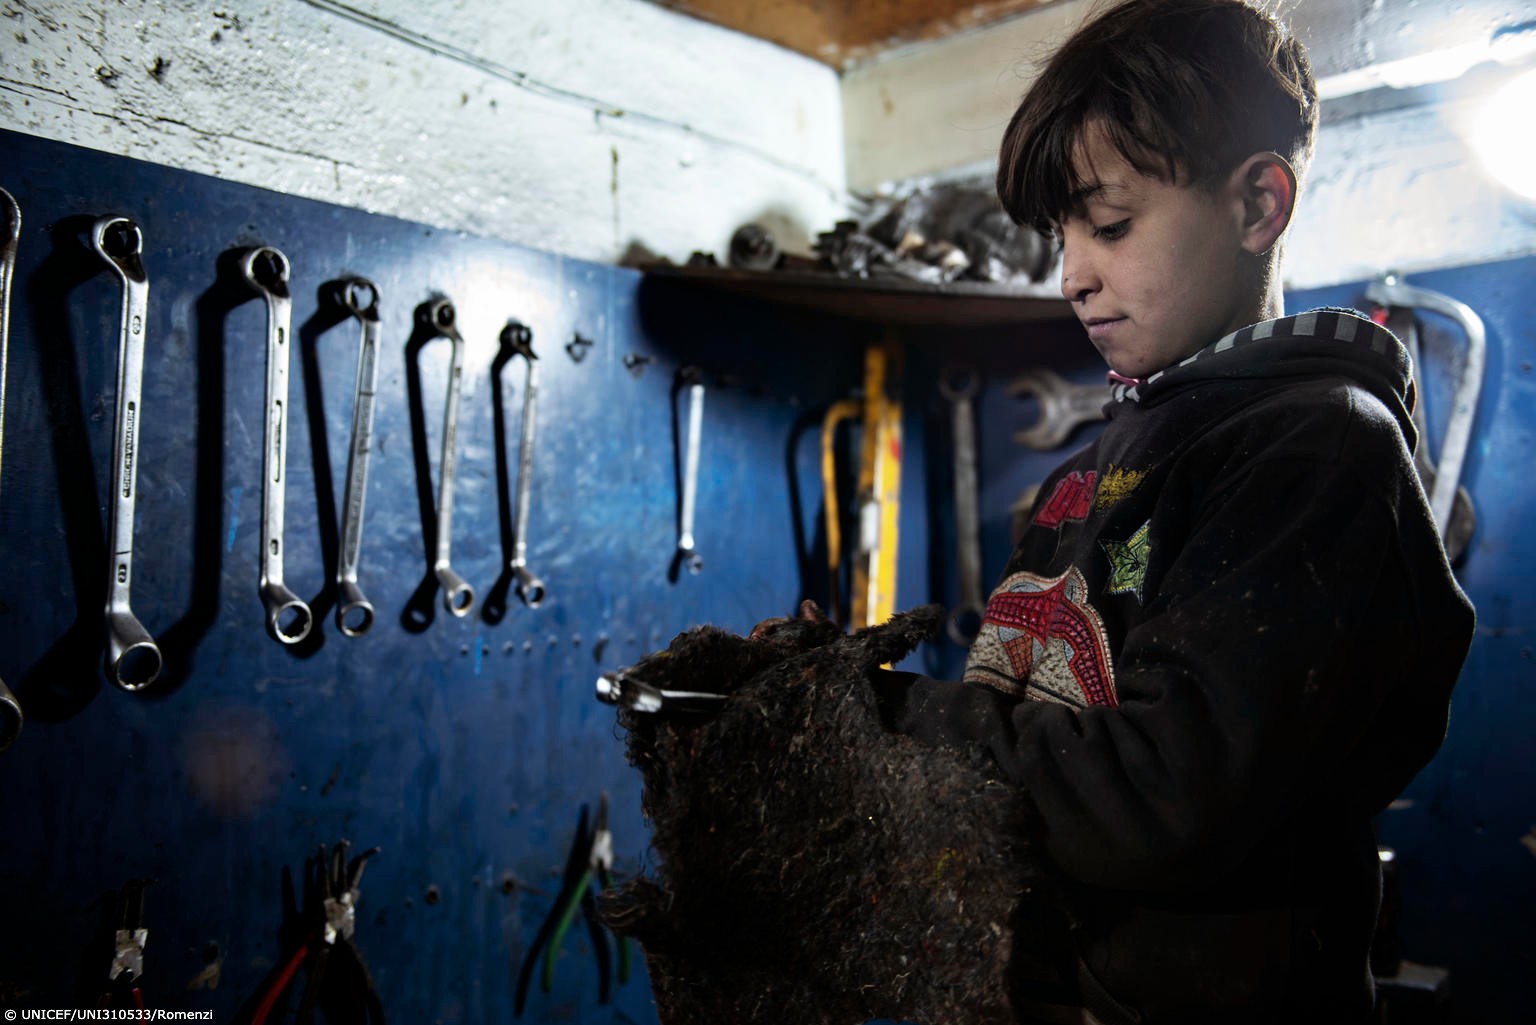 La Unicef difundió el caso de Hussein, un niño de 10 años que hace 2 años trabaja en un taller mecánico. Foto: Twitter / Unicef